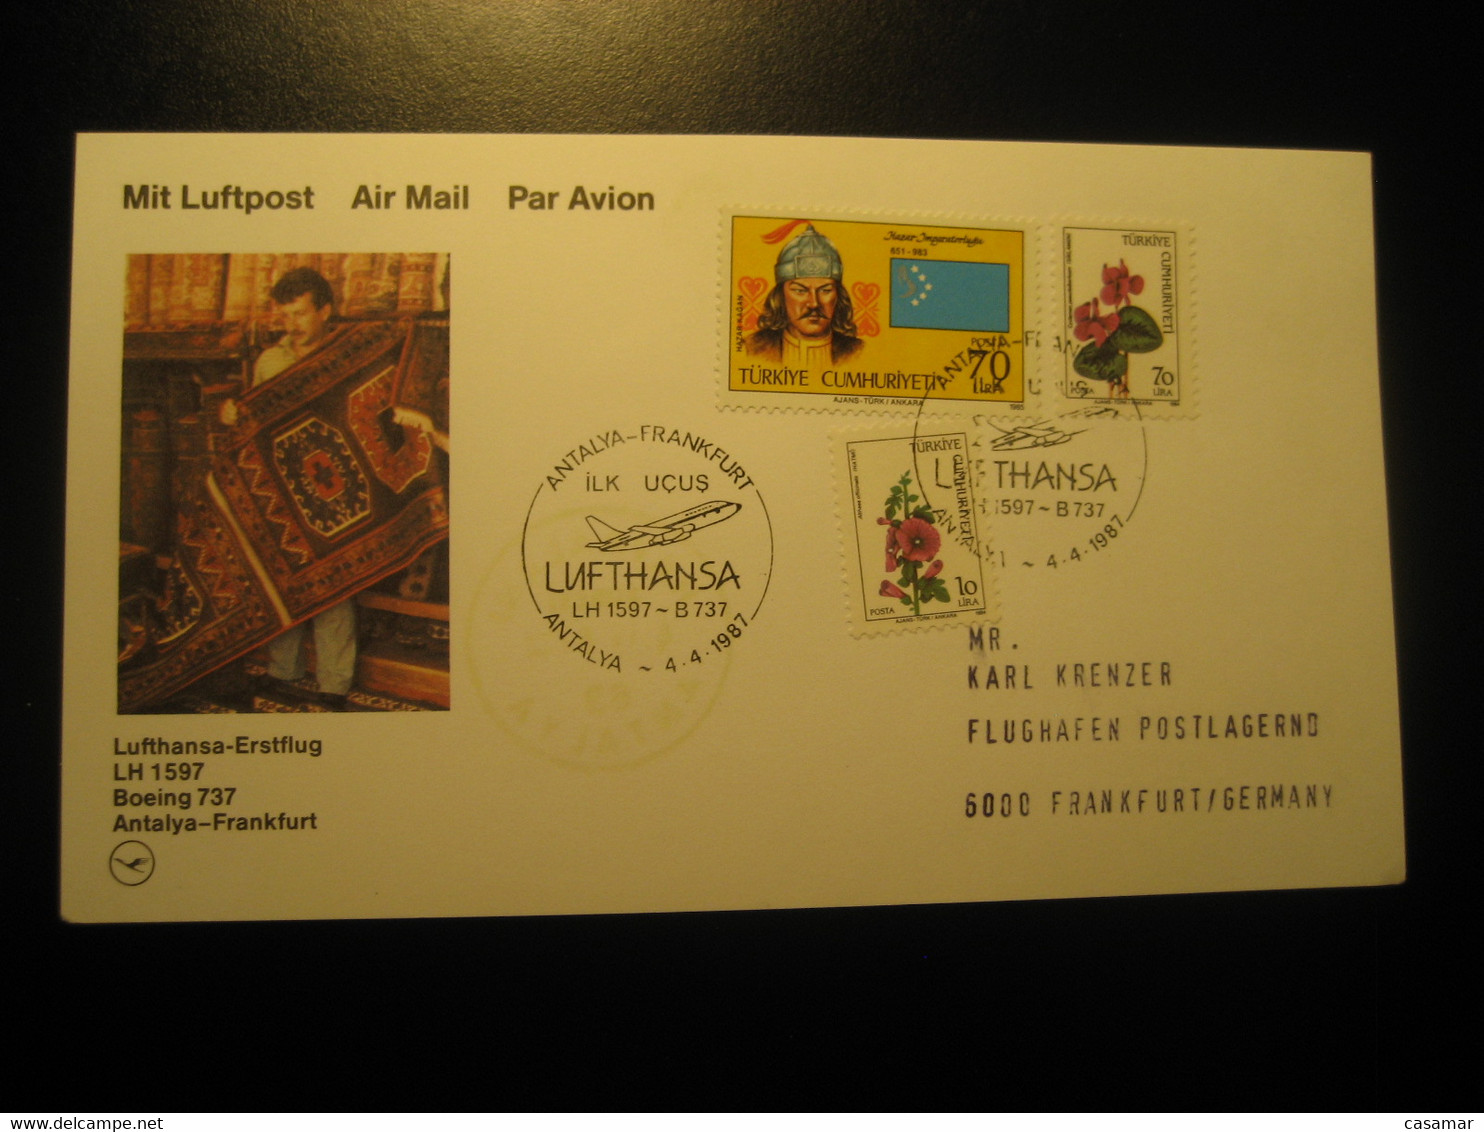 Antalya Frankfurt 1987 Lufthansa Airline Boeing 737 First Flight 3 Stamp Cancel Card Turkey Germany - Airmail